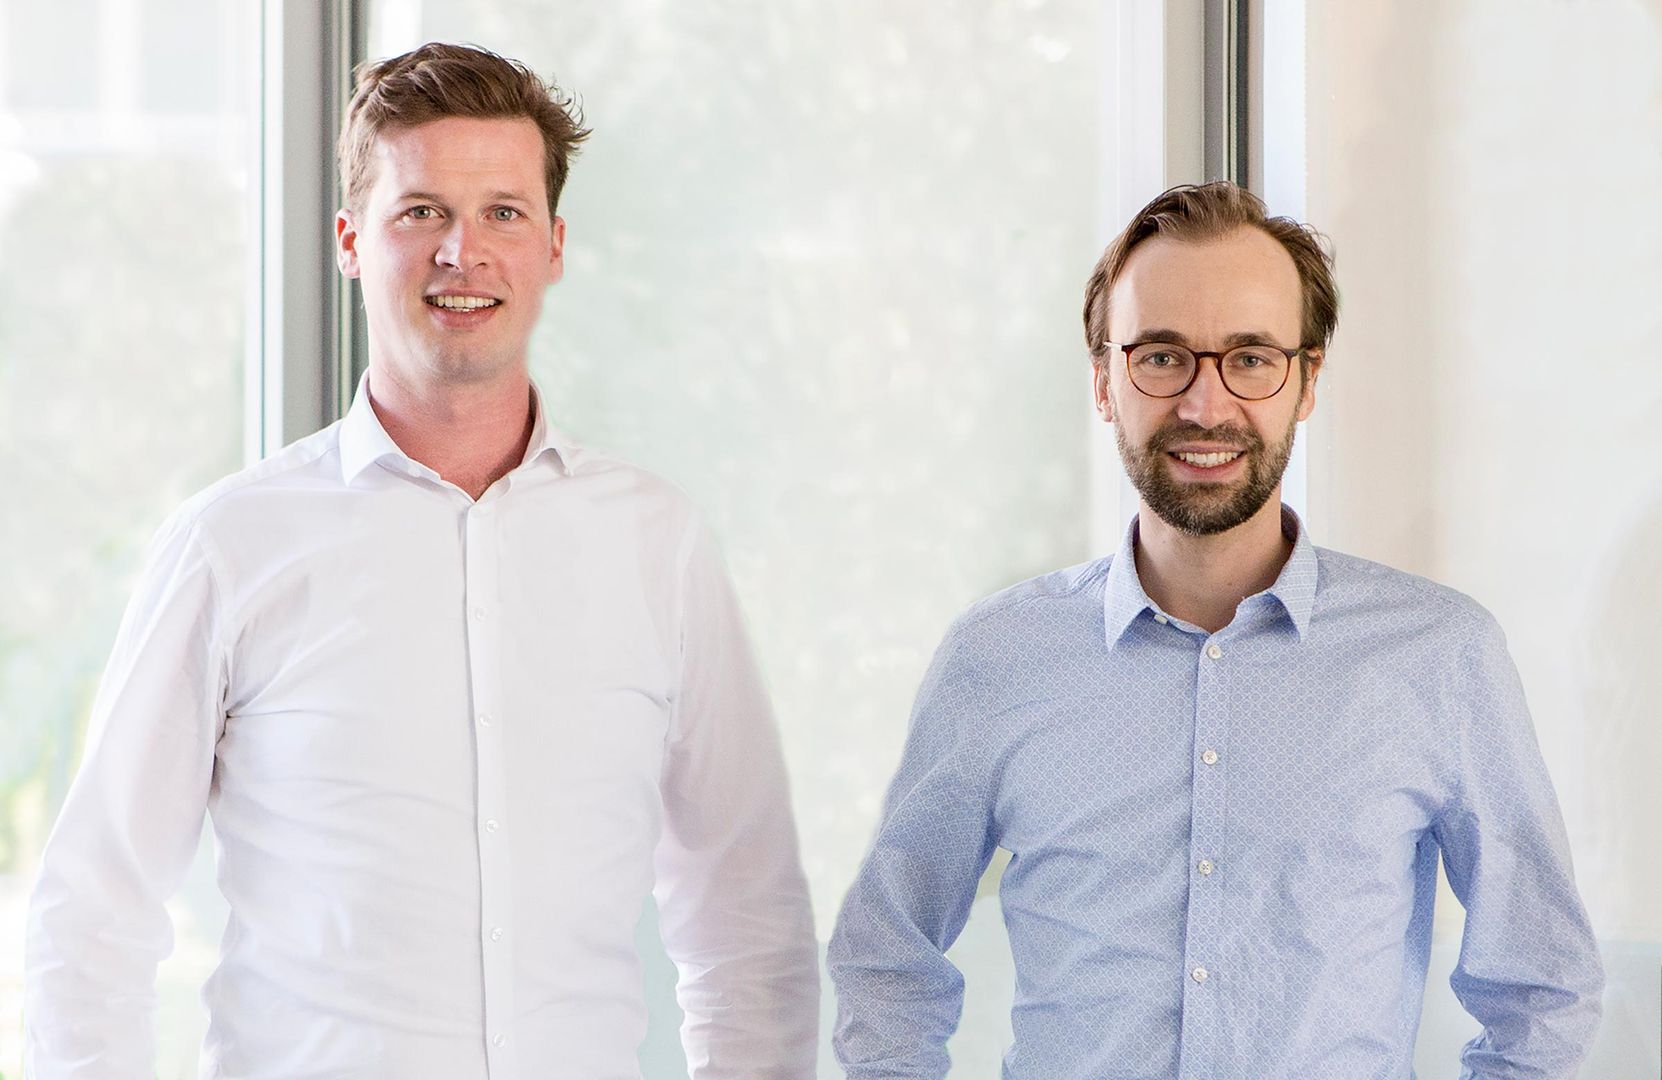 Jochen Schwill and Hendrik Saemisch are the CEOs of Next Kraftwerke.